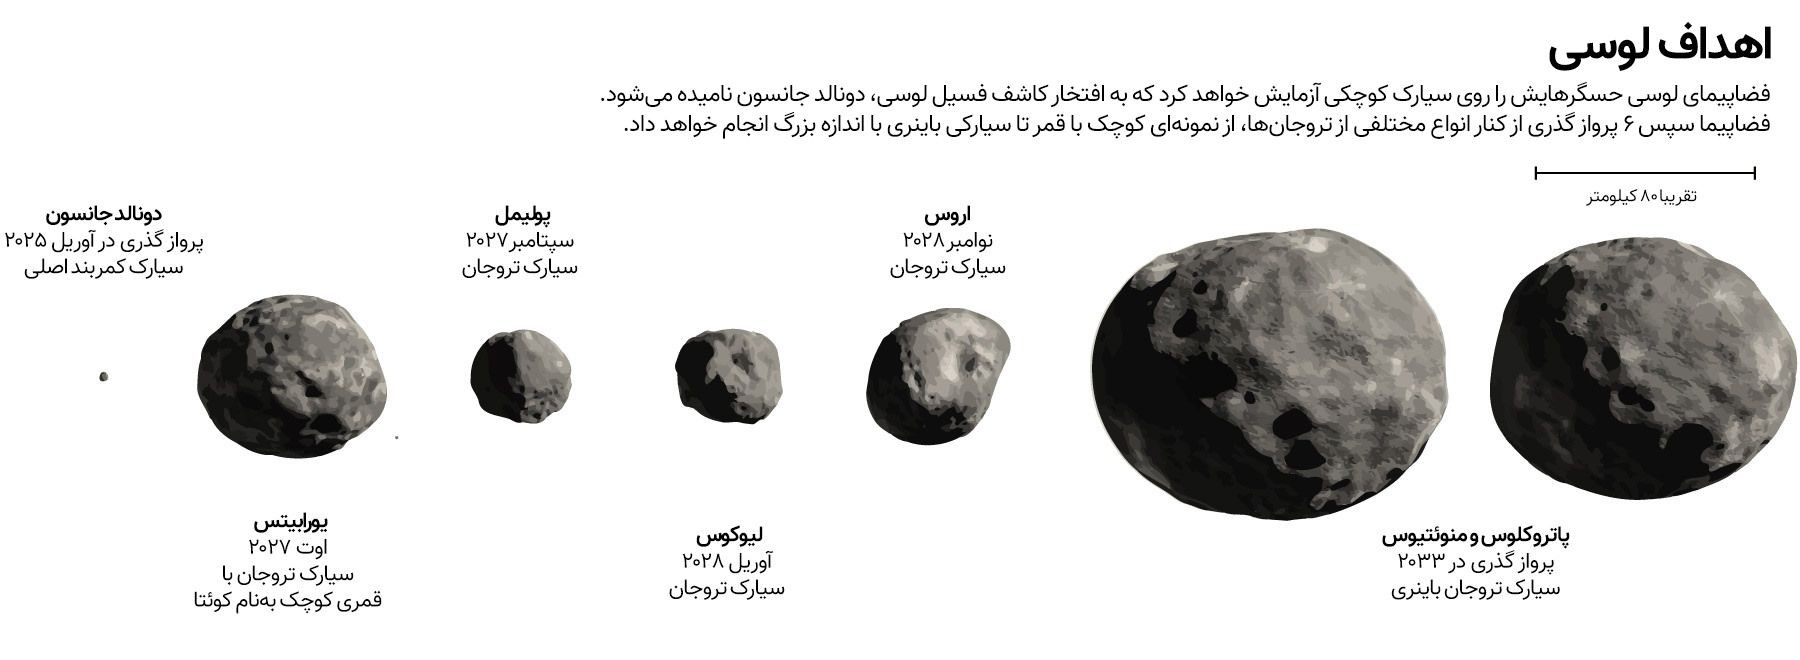 کاوشگر لوسی سیارک های تروا